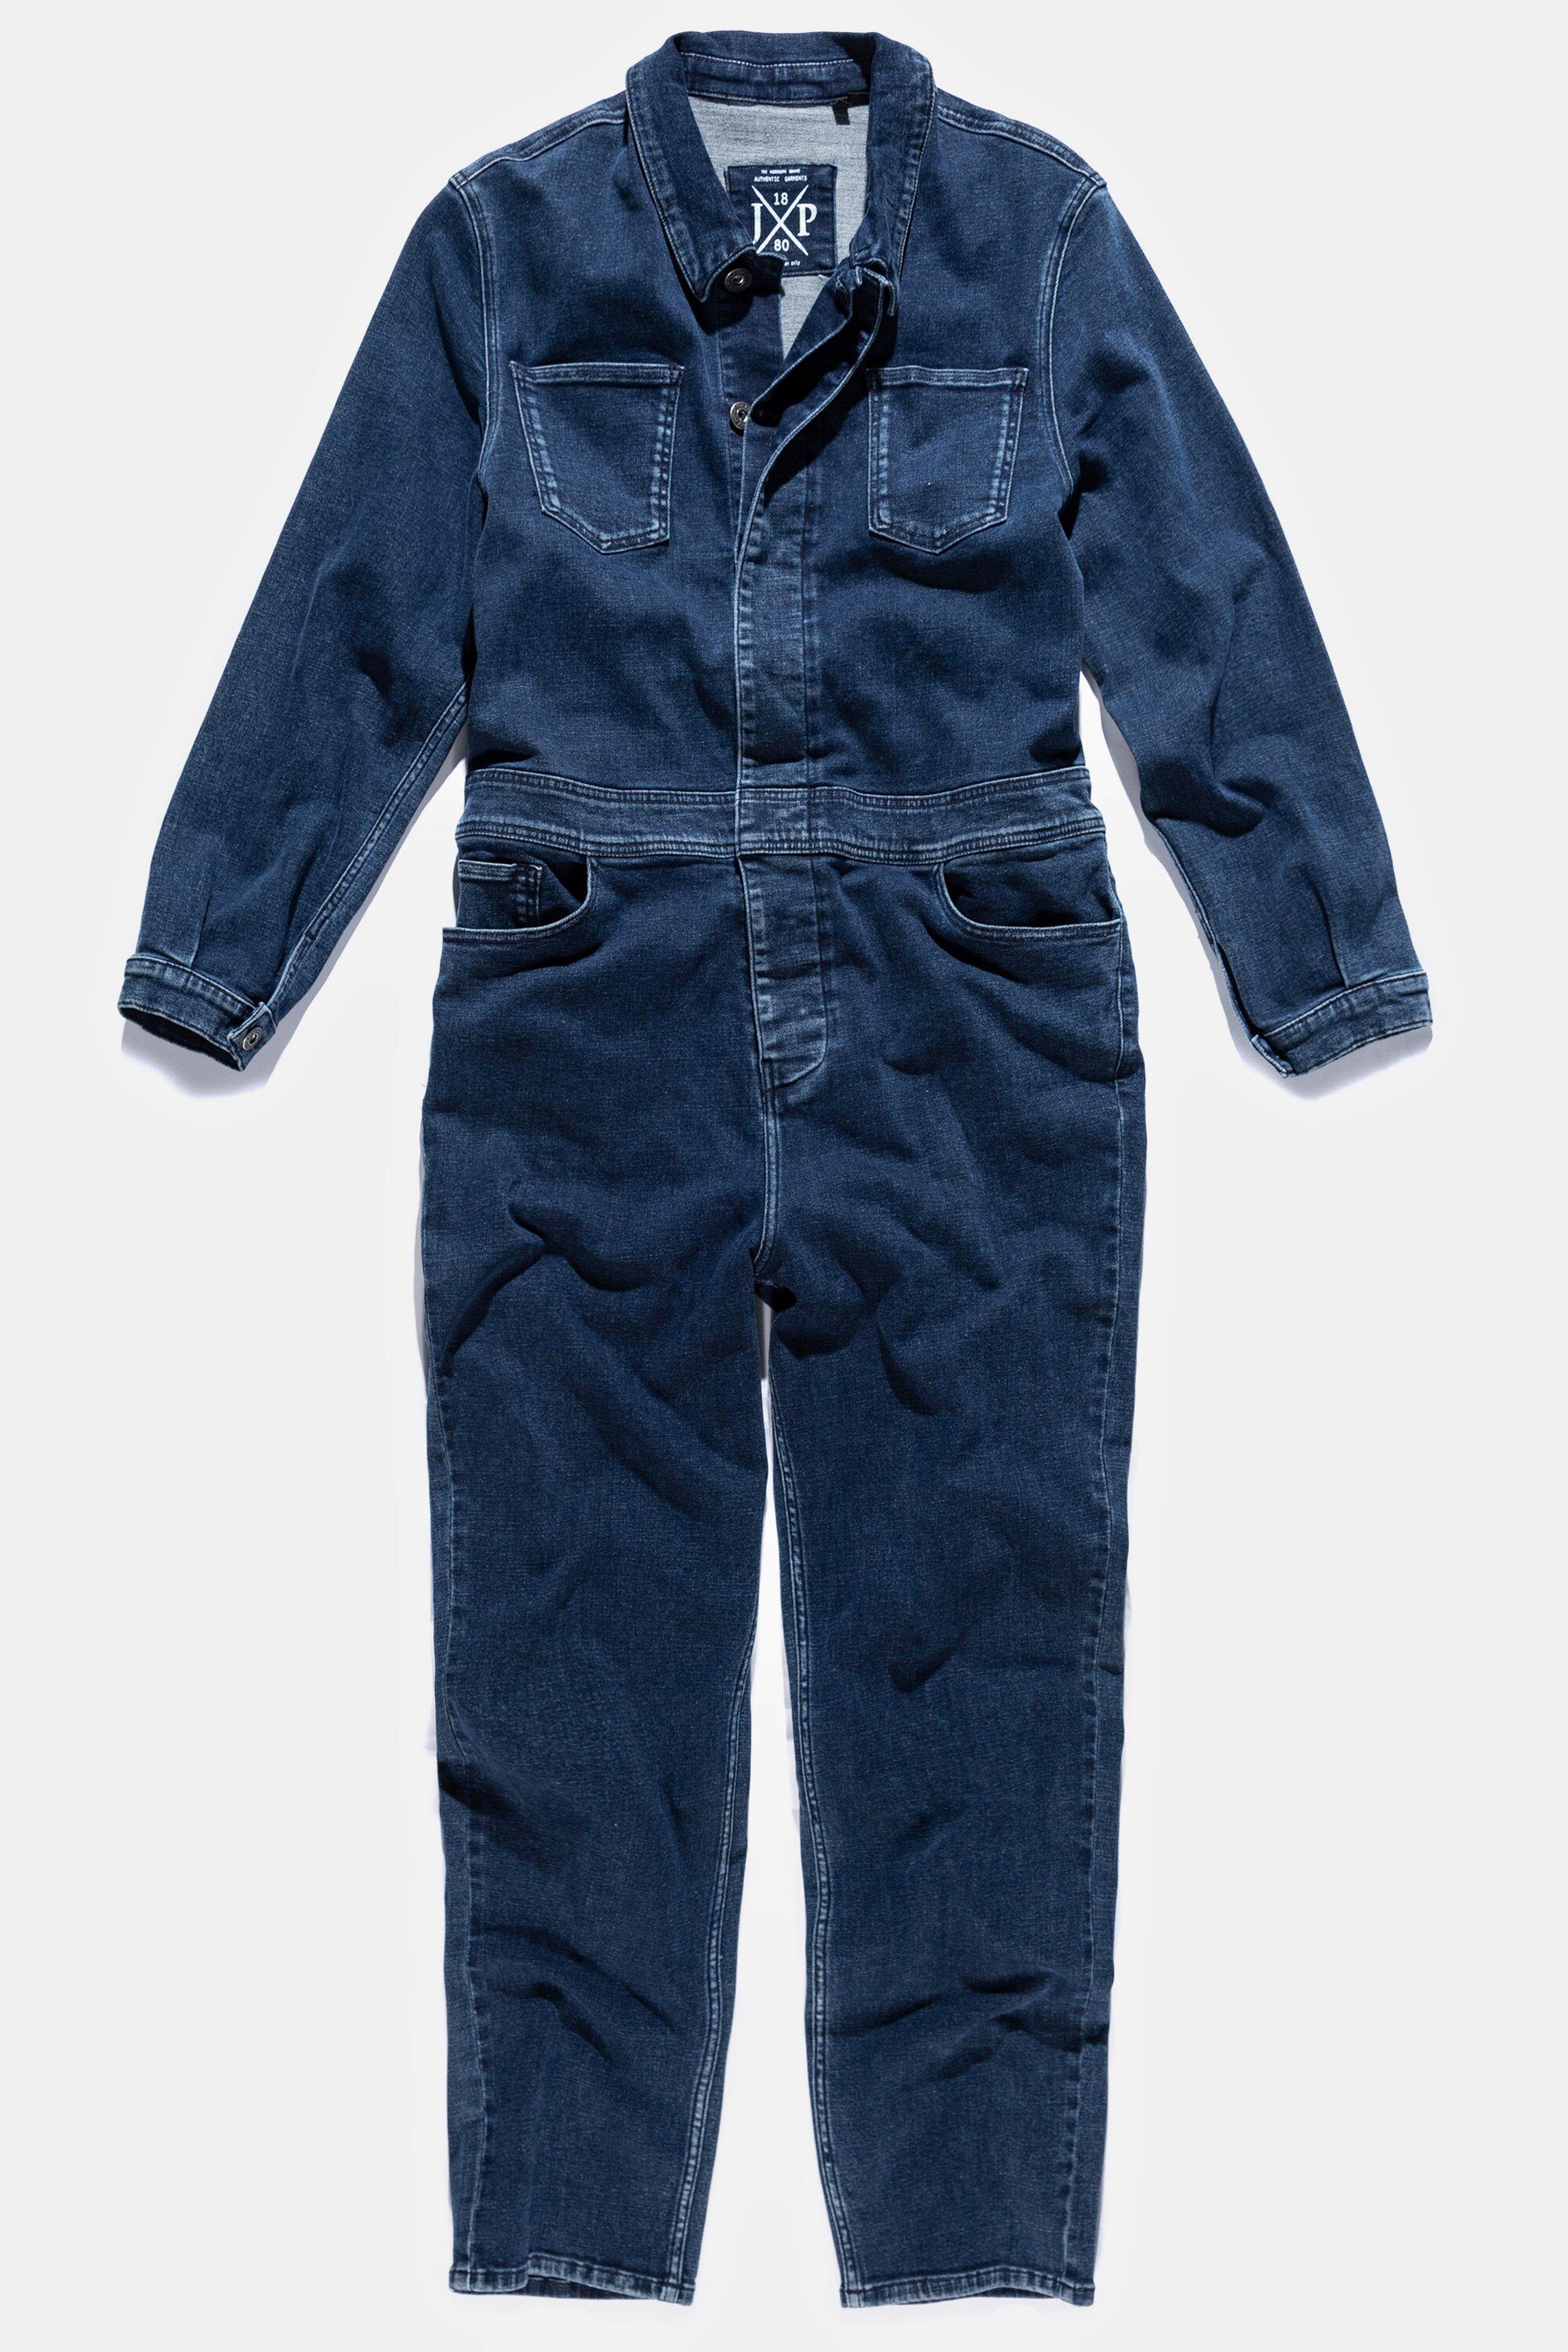 blue Workwear 5-Pocket-Jeans denim Denim Brusttaschen JP1880 Overall Langarm